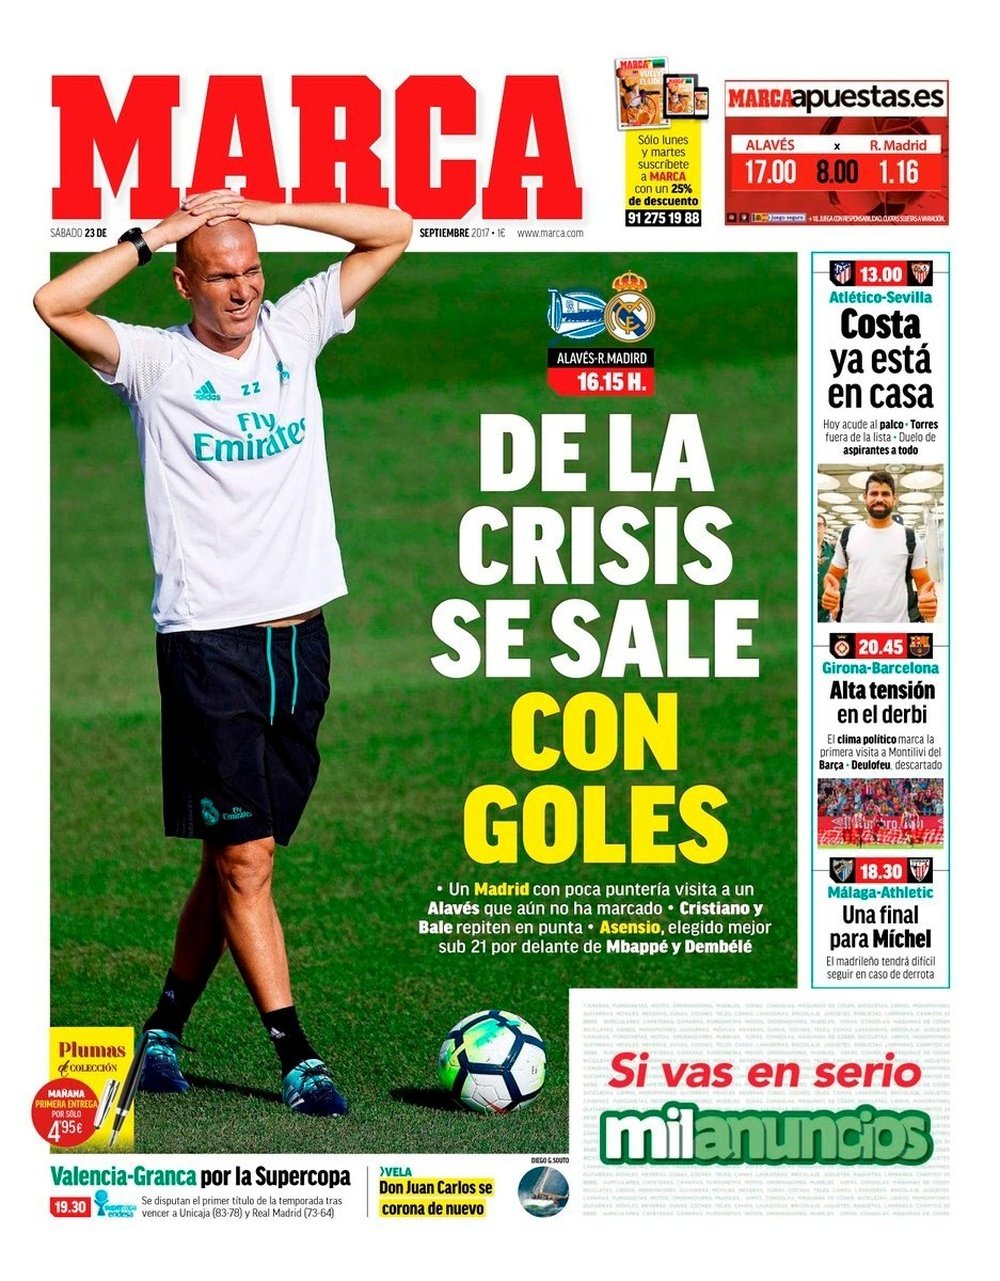 La Une du quotidien sportif espagnol 'Marca' du 23-09-17. Marca